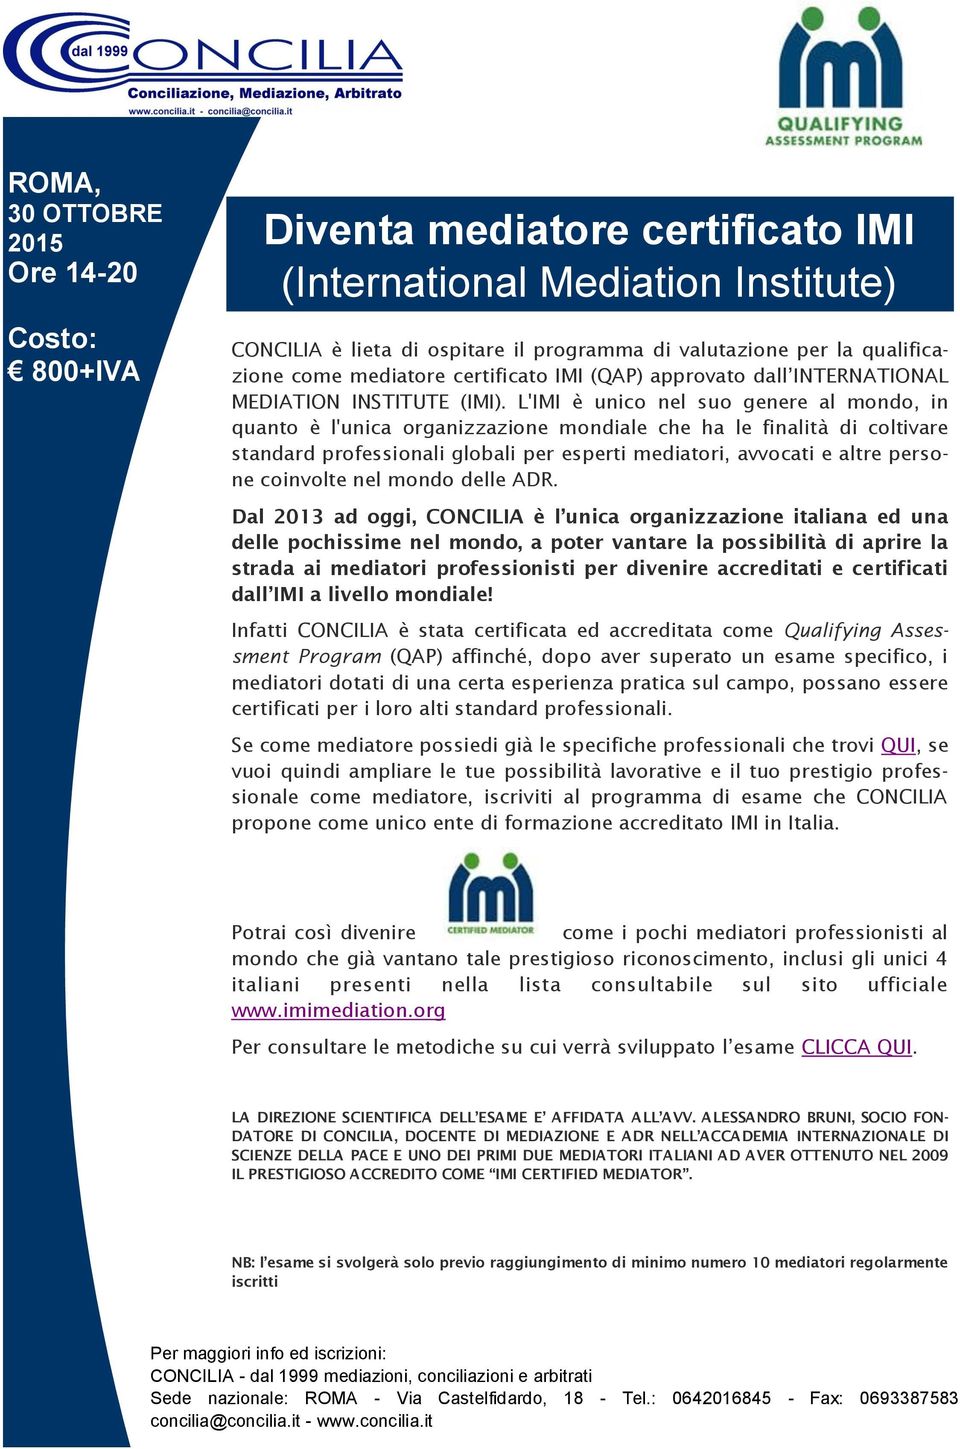 L'IMI è unico nel suo genere al mondo, in quanto è l'unica organizzazione mondiale che ha le finalità di coltivare standard professionali globali per esperti mediatori, avvocati e altre persone